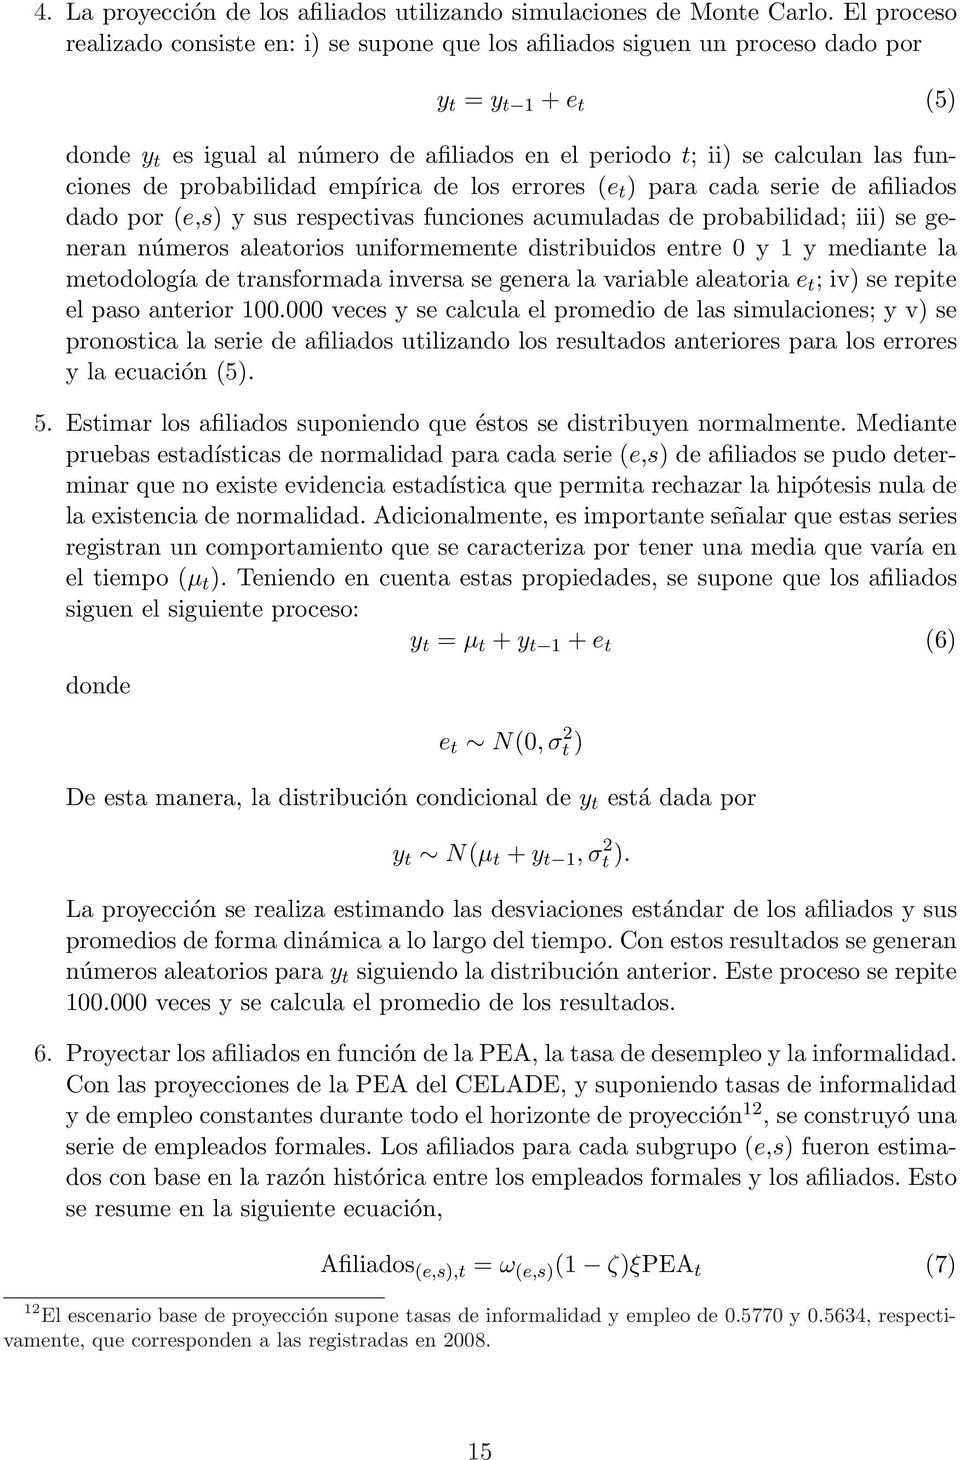 funciones de probabilidad empírica de los errores (e t ) para cada serie de afiliados dado por (e,s) y sus respectivas funciones acumuladas de probabilidad; iii) se generan números aleatorios